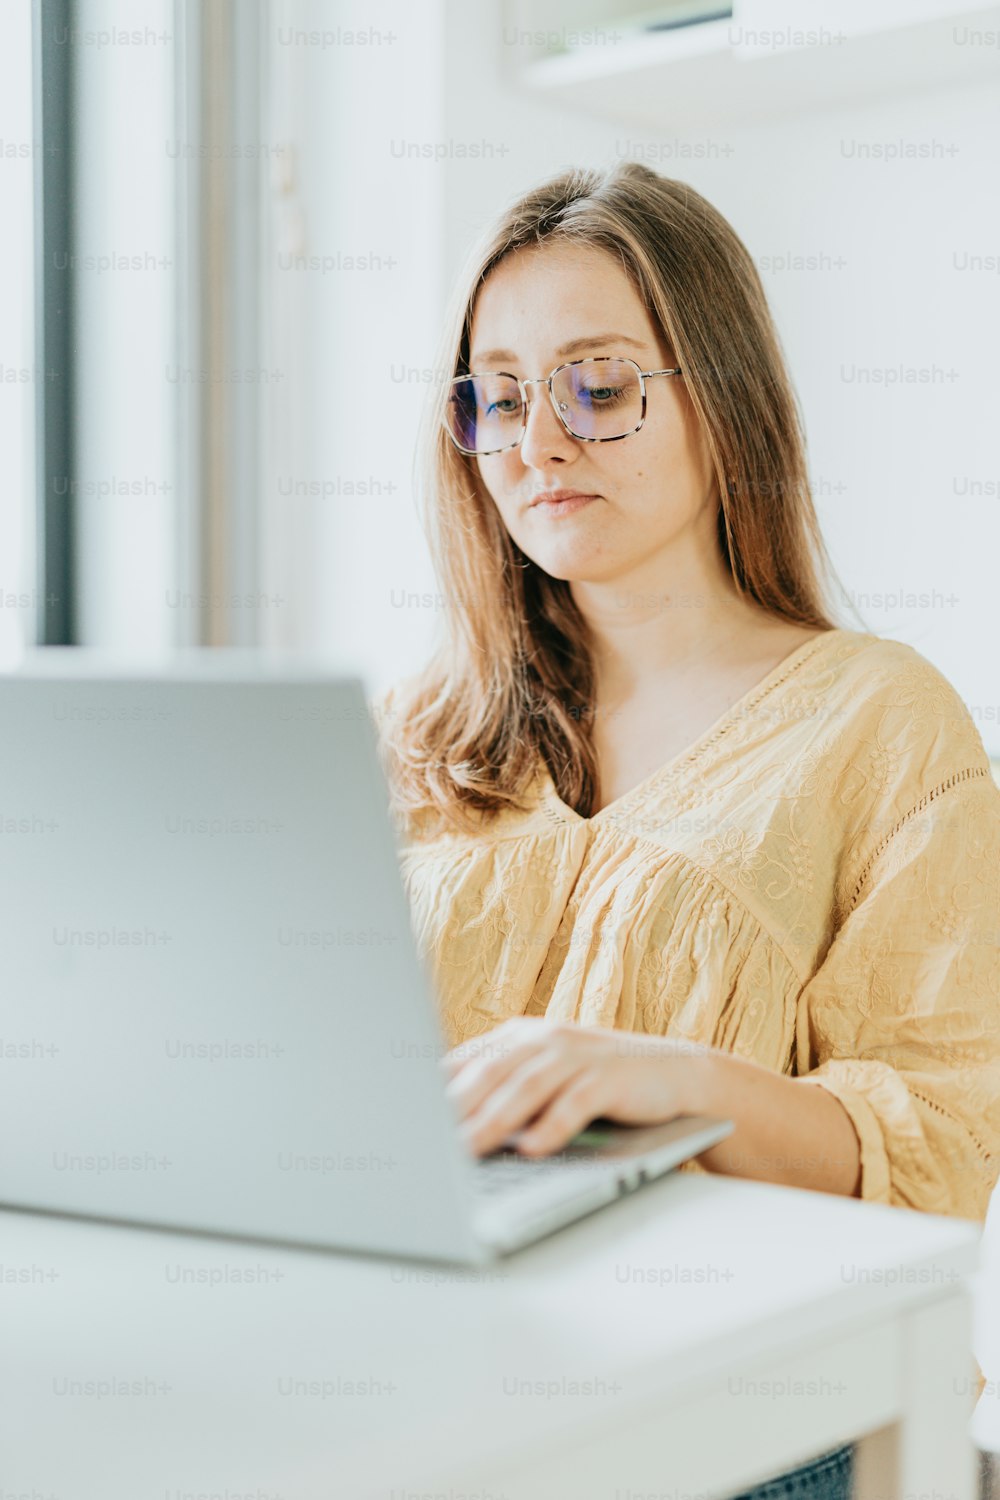 Eine Frau sitzt an einem Schreibtisch mit einem Laptop